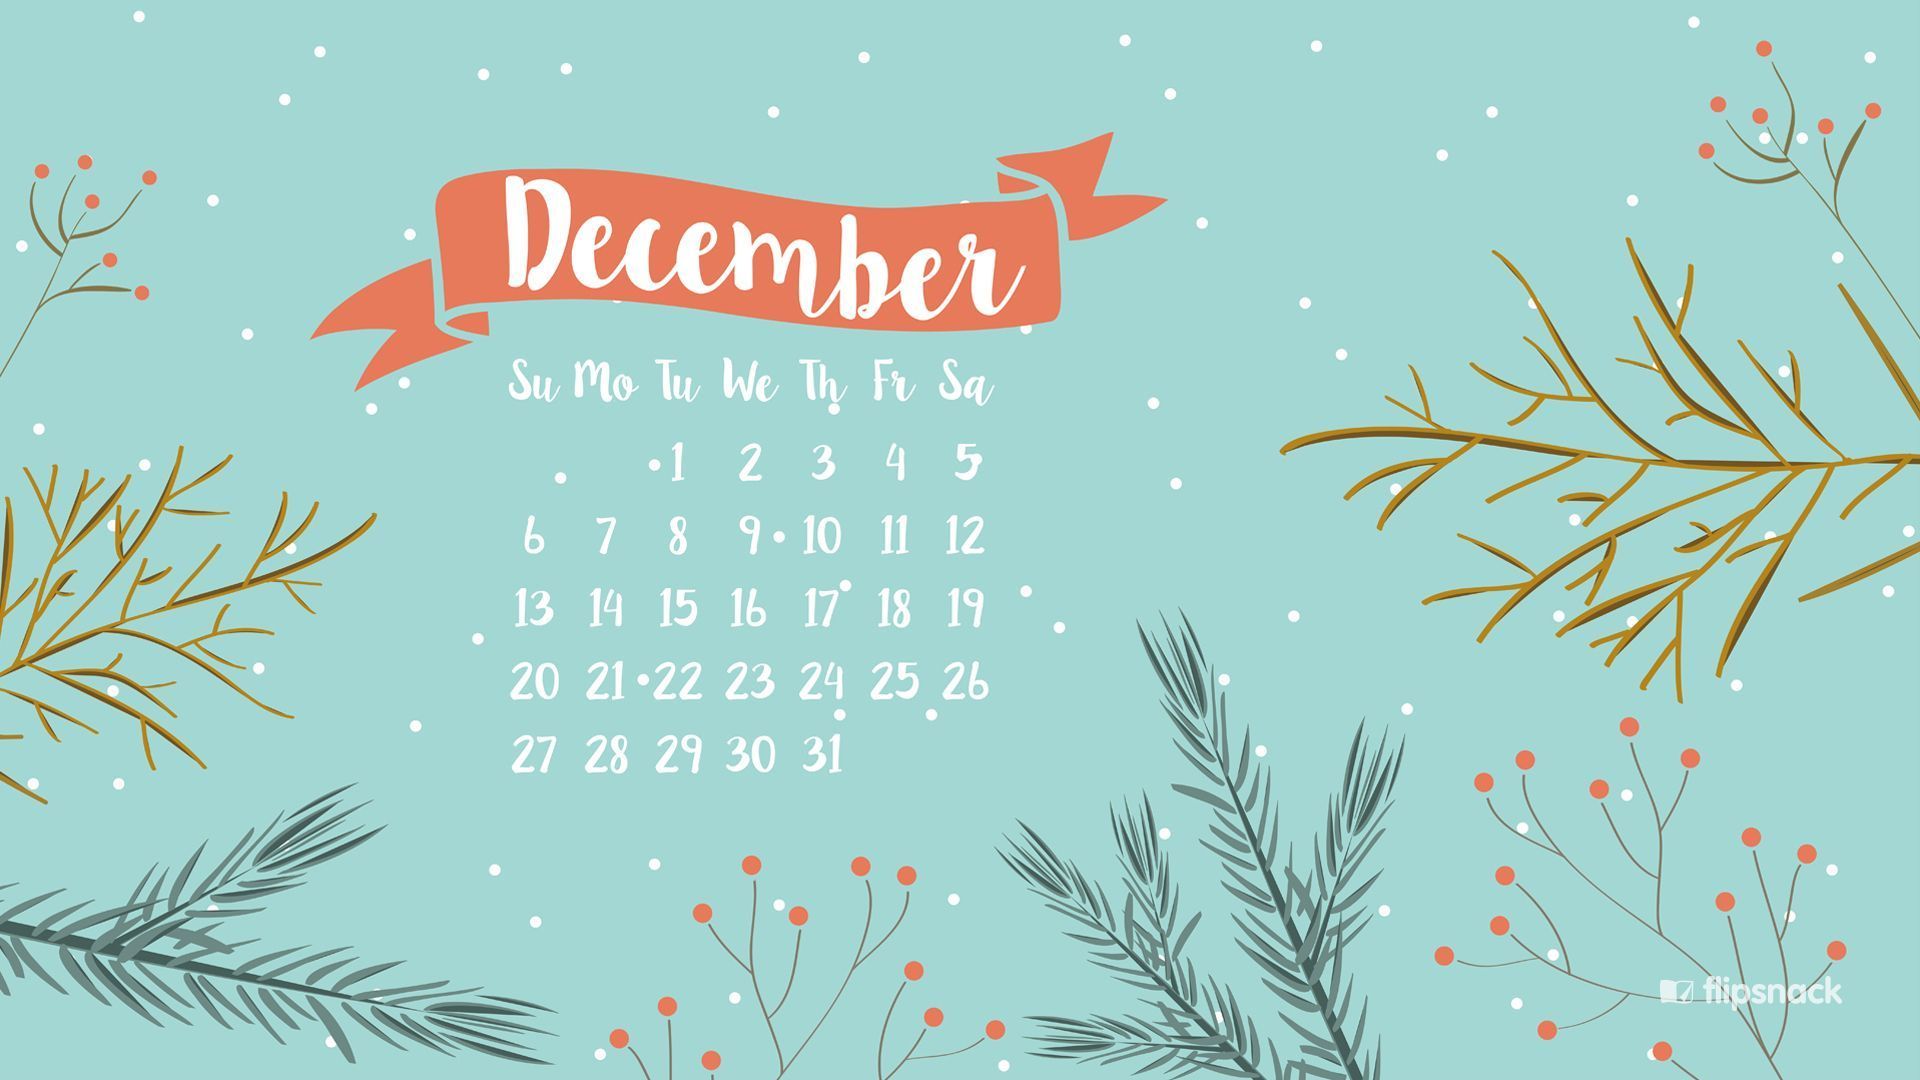 December Calendar Wallpaper 2019 - HD Wallpaper 